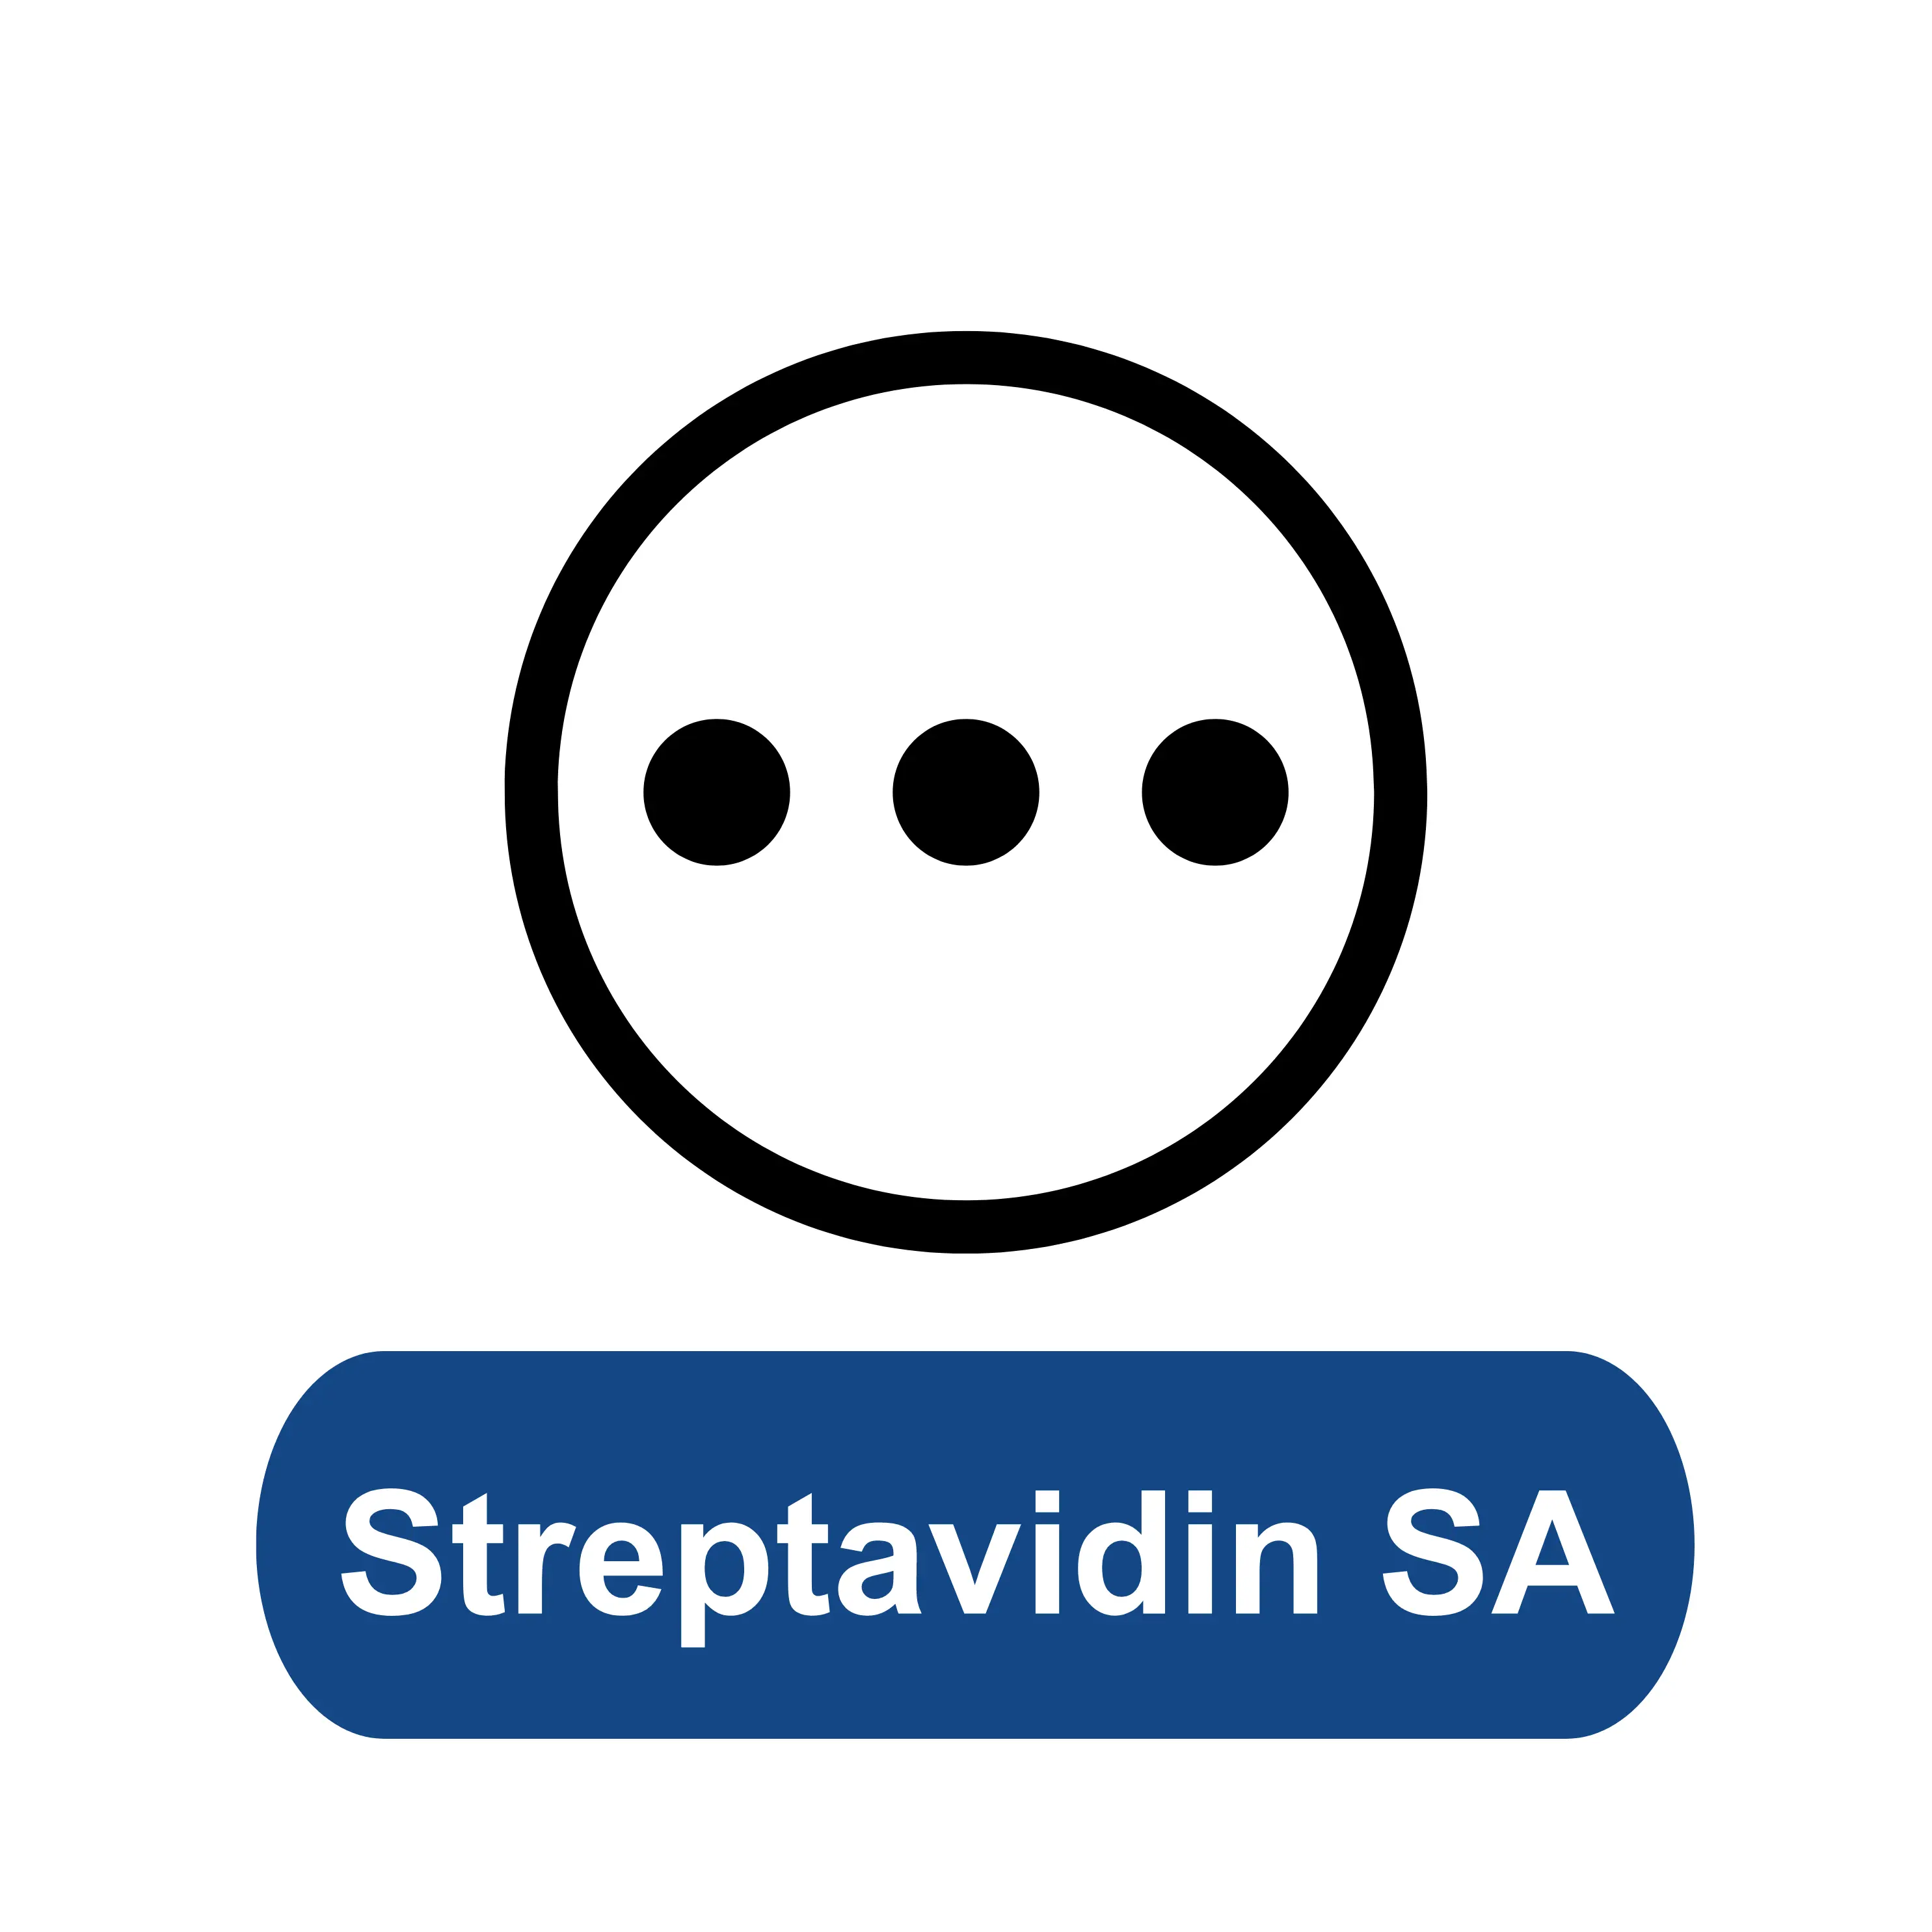 Streptavidin SA